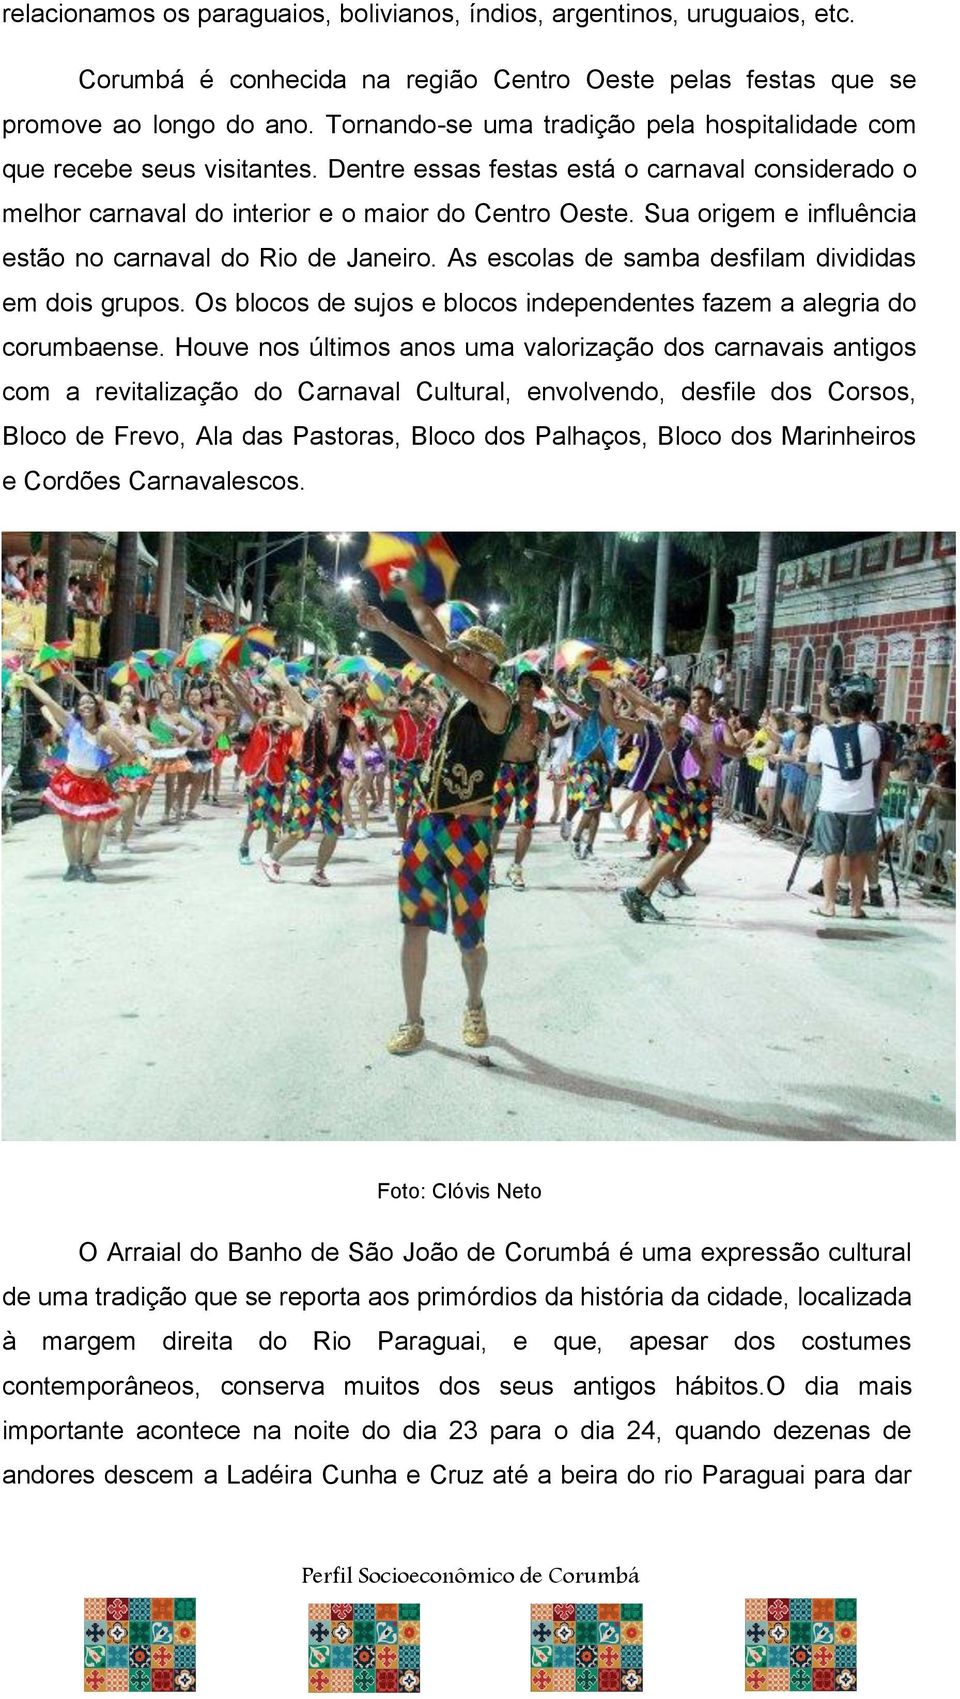 Sua origem e influência estão no carnaval do Rio de Janeiro. As escolas de samba desfilam divididas em dois grupos. Os blocos de sujos e blocos independentes fazem a alegria do corumbaense.